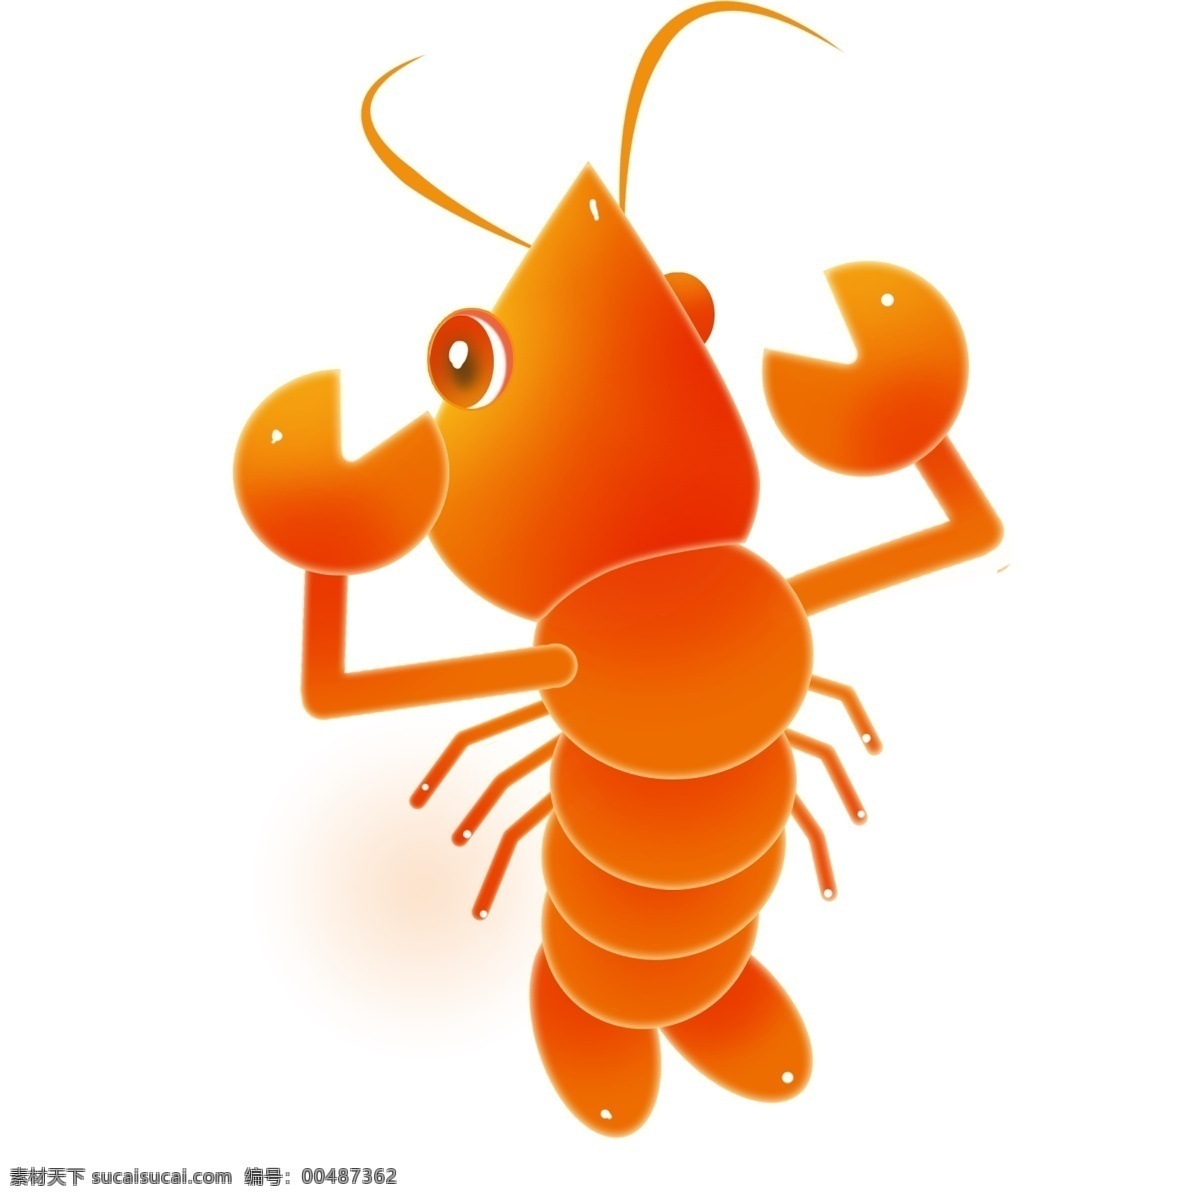 可爱 龙虾 背面 图 插画 一只龙虾 卡通龙虾 虾 海鲜 海洋生物 海水 海洋大虾 可爱龙虾 龙虾背面图